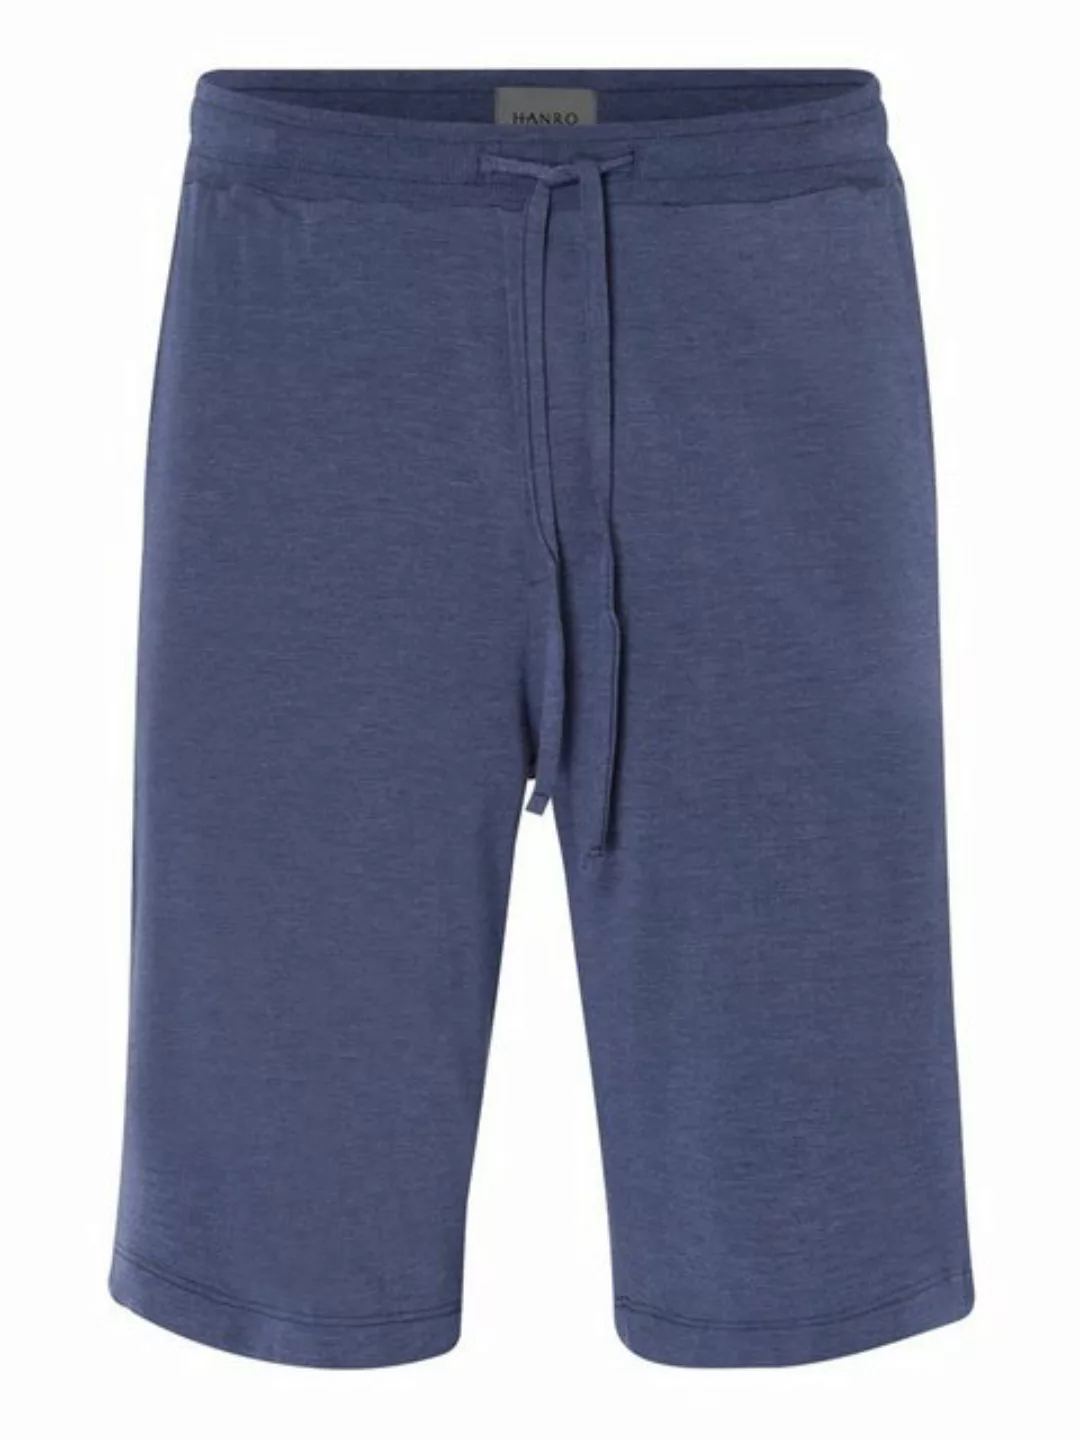 Hanro Pyjamashorts Casuals Schlaf-shorts sleepwear schlafmode günstig online kaufen